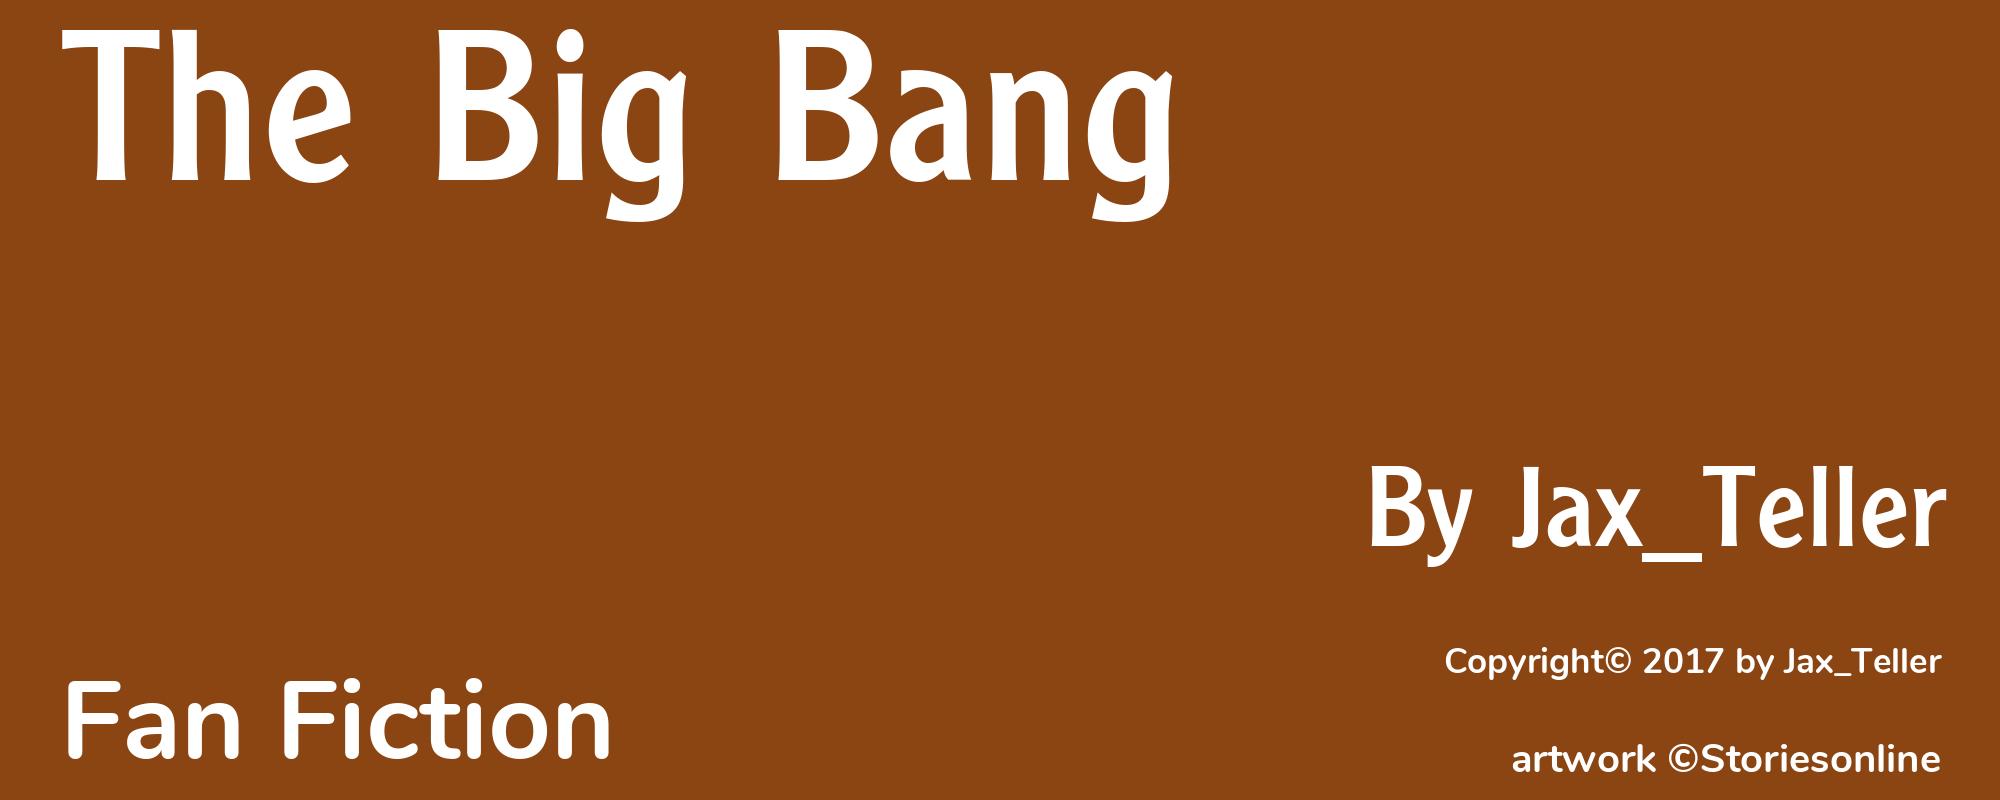 The Big Bang - Cover